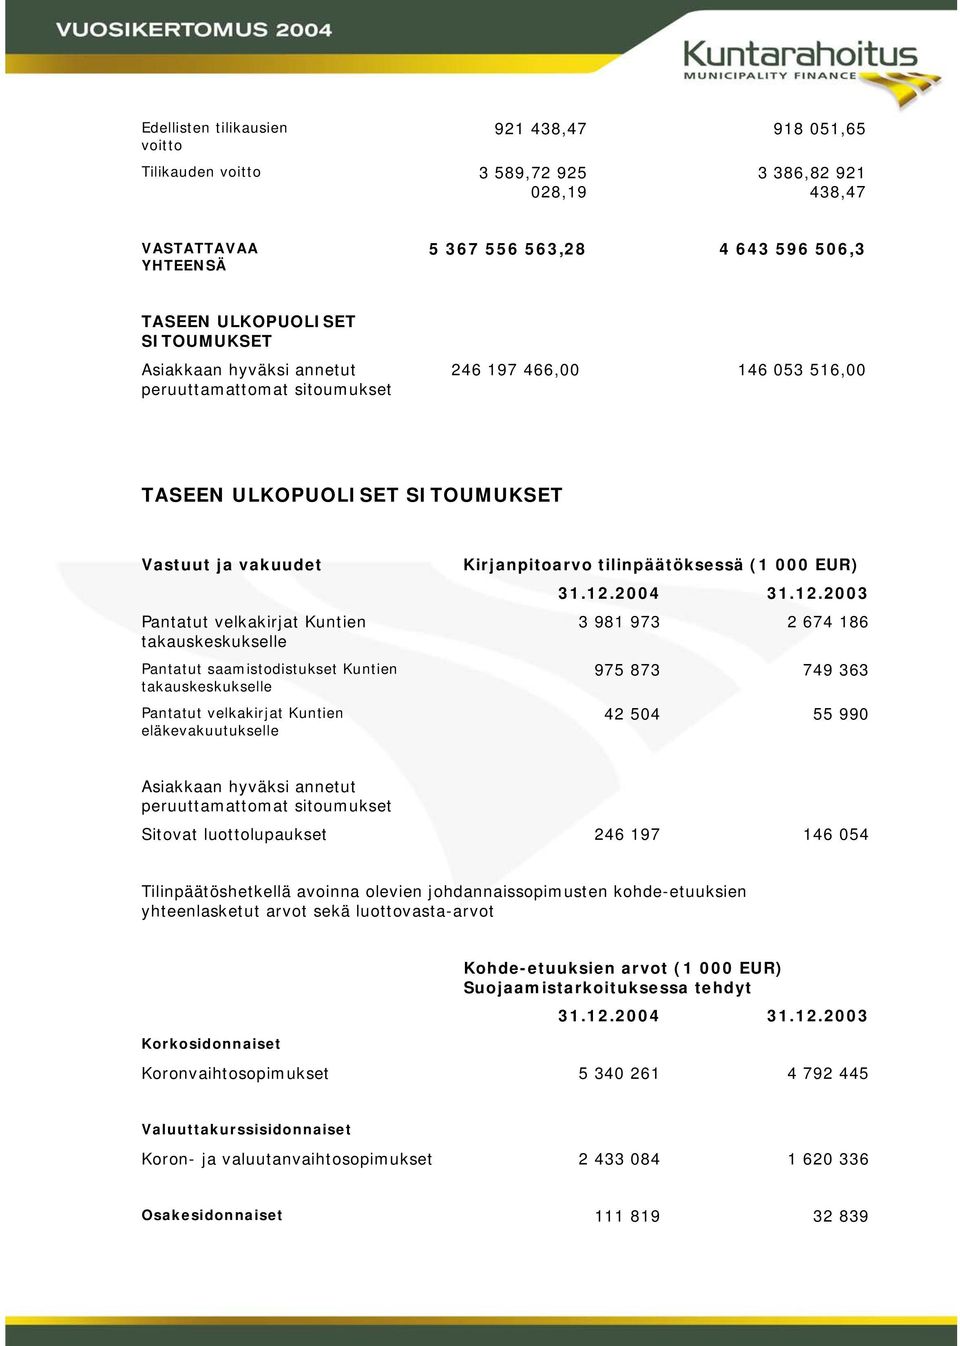 saamistodistukset Kuntien takauskeskukselle Pantatut velkakirjat Kuntien eläkevakuutukselle Kirjanpitoarvo tilinpäätöksessä (1 000 EUR) 31.12.